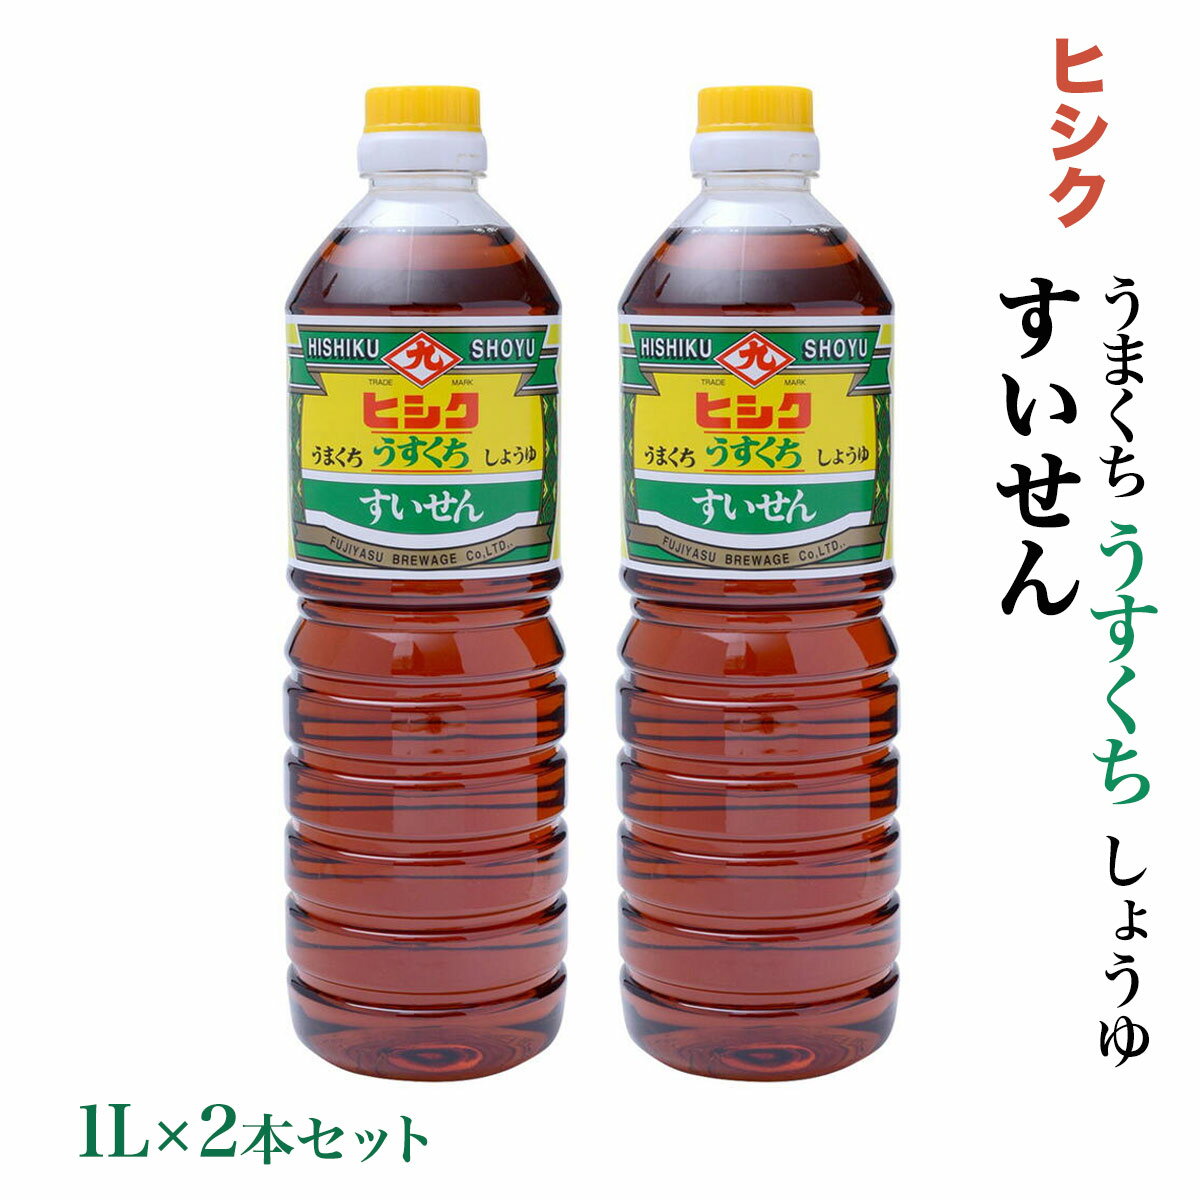 鹿児島 藤安醸醸造 ヒシク しょうゆ 醤油 あまい 甘口 [藤安醸造 ヒシク] 醤油 うすくち しょうゆ すいせん 1L×2本セット